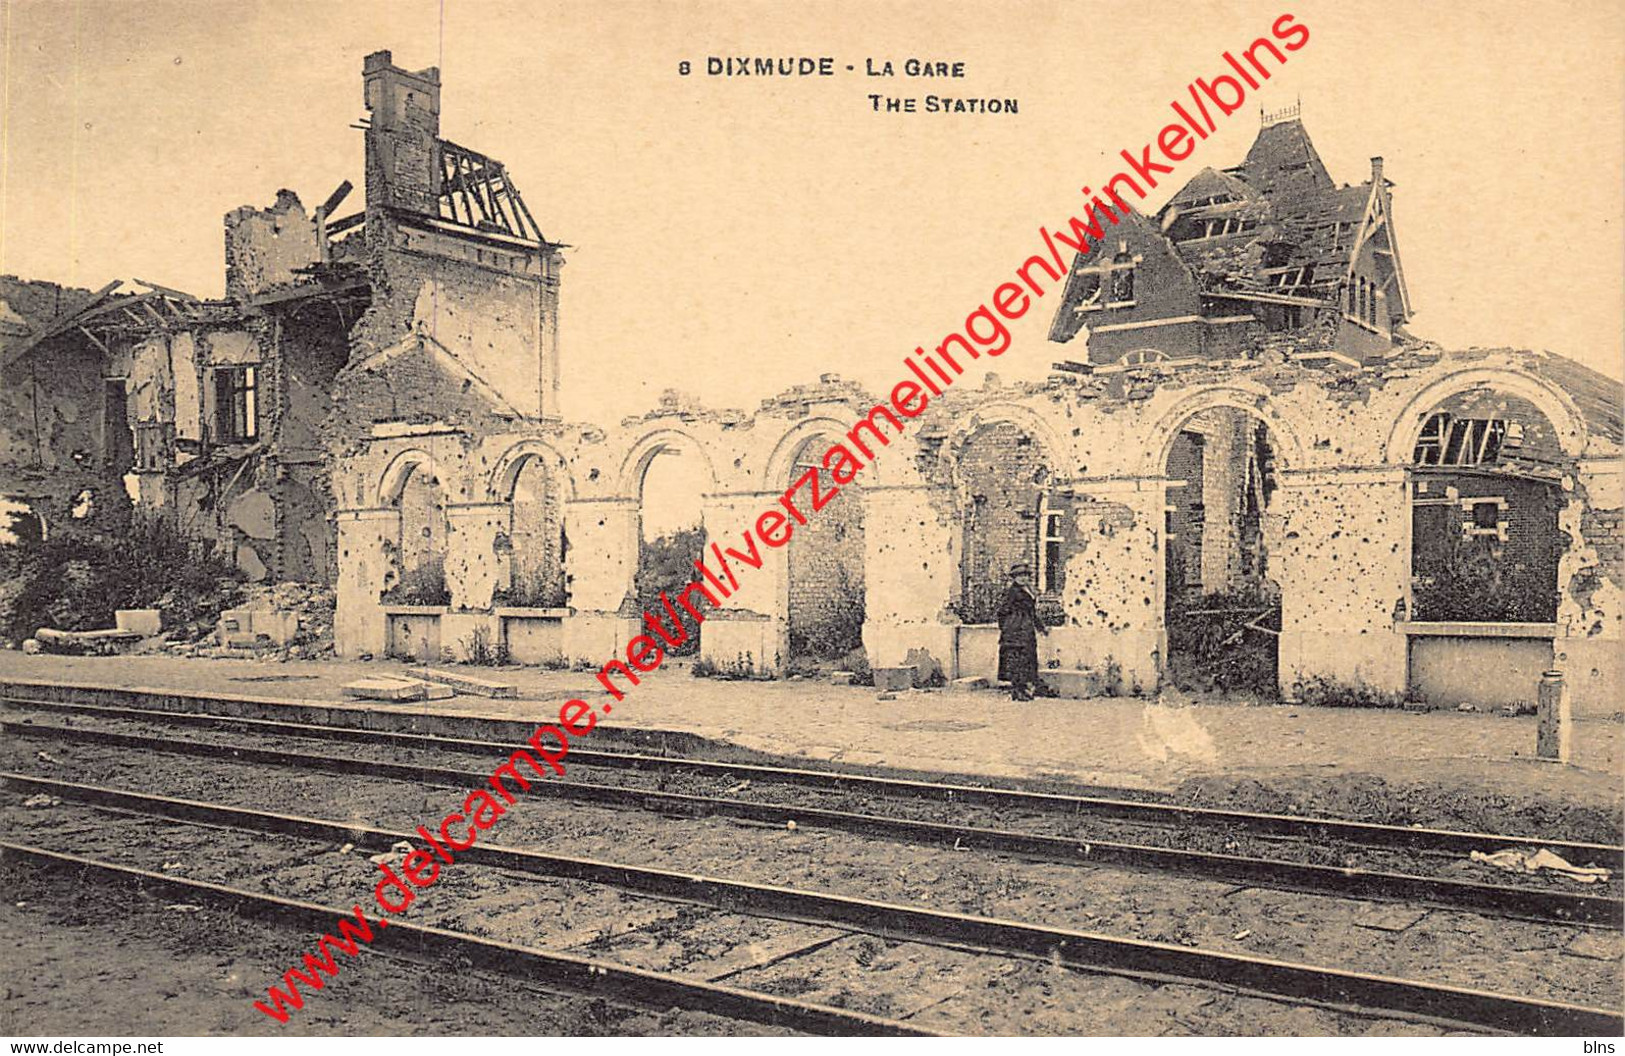 Dixmude - The Station - Diksmuide - Diksmuide